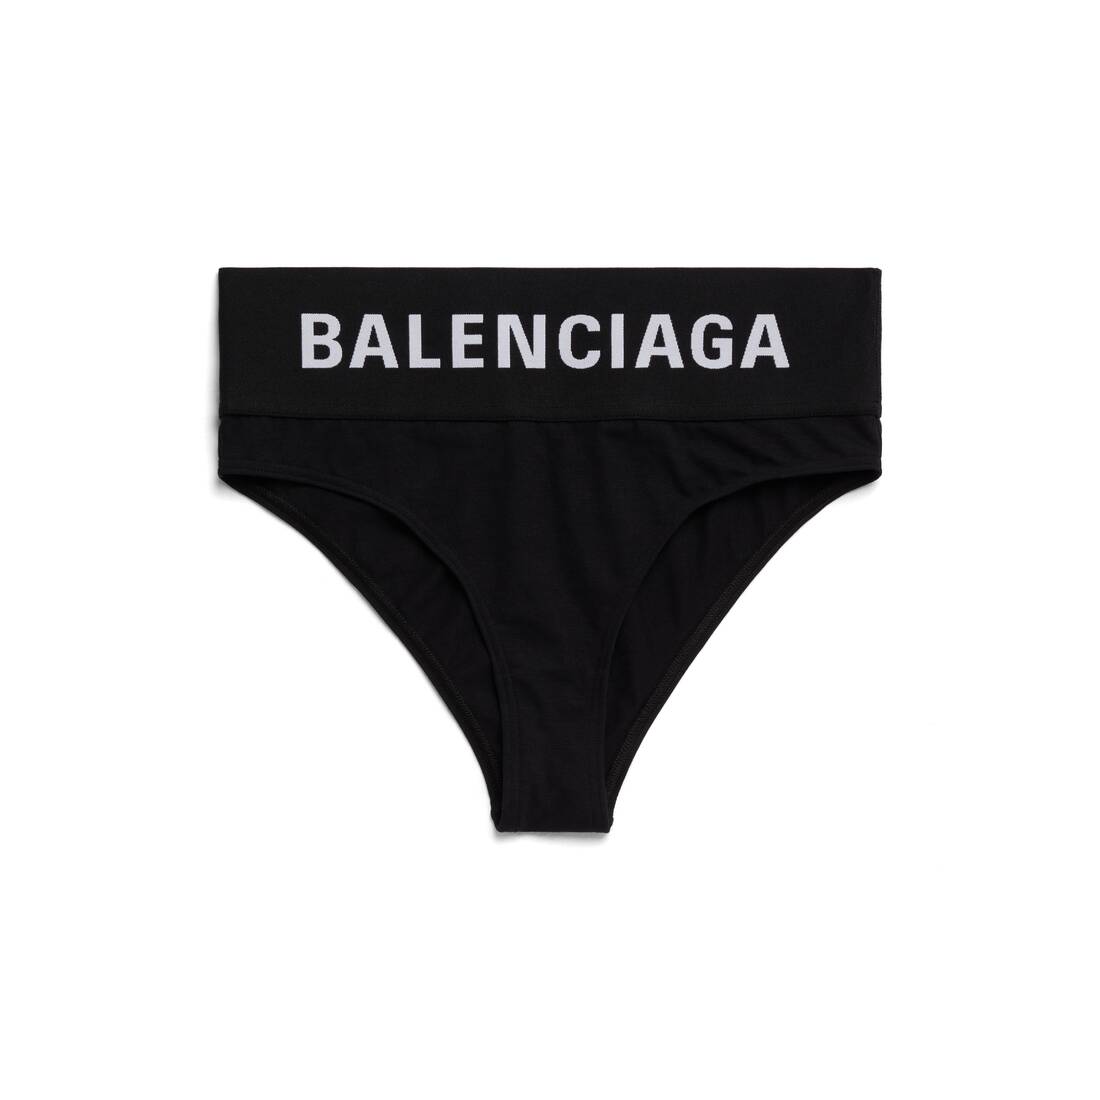 Balenciaga Underwear 22 (Balenciaga)